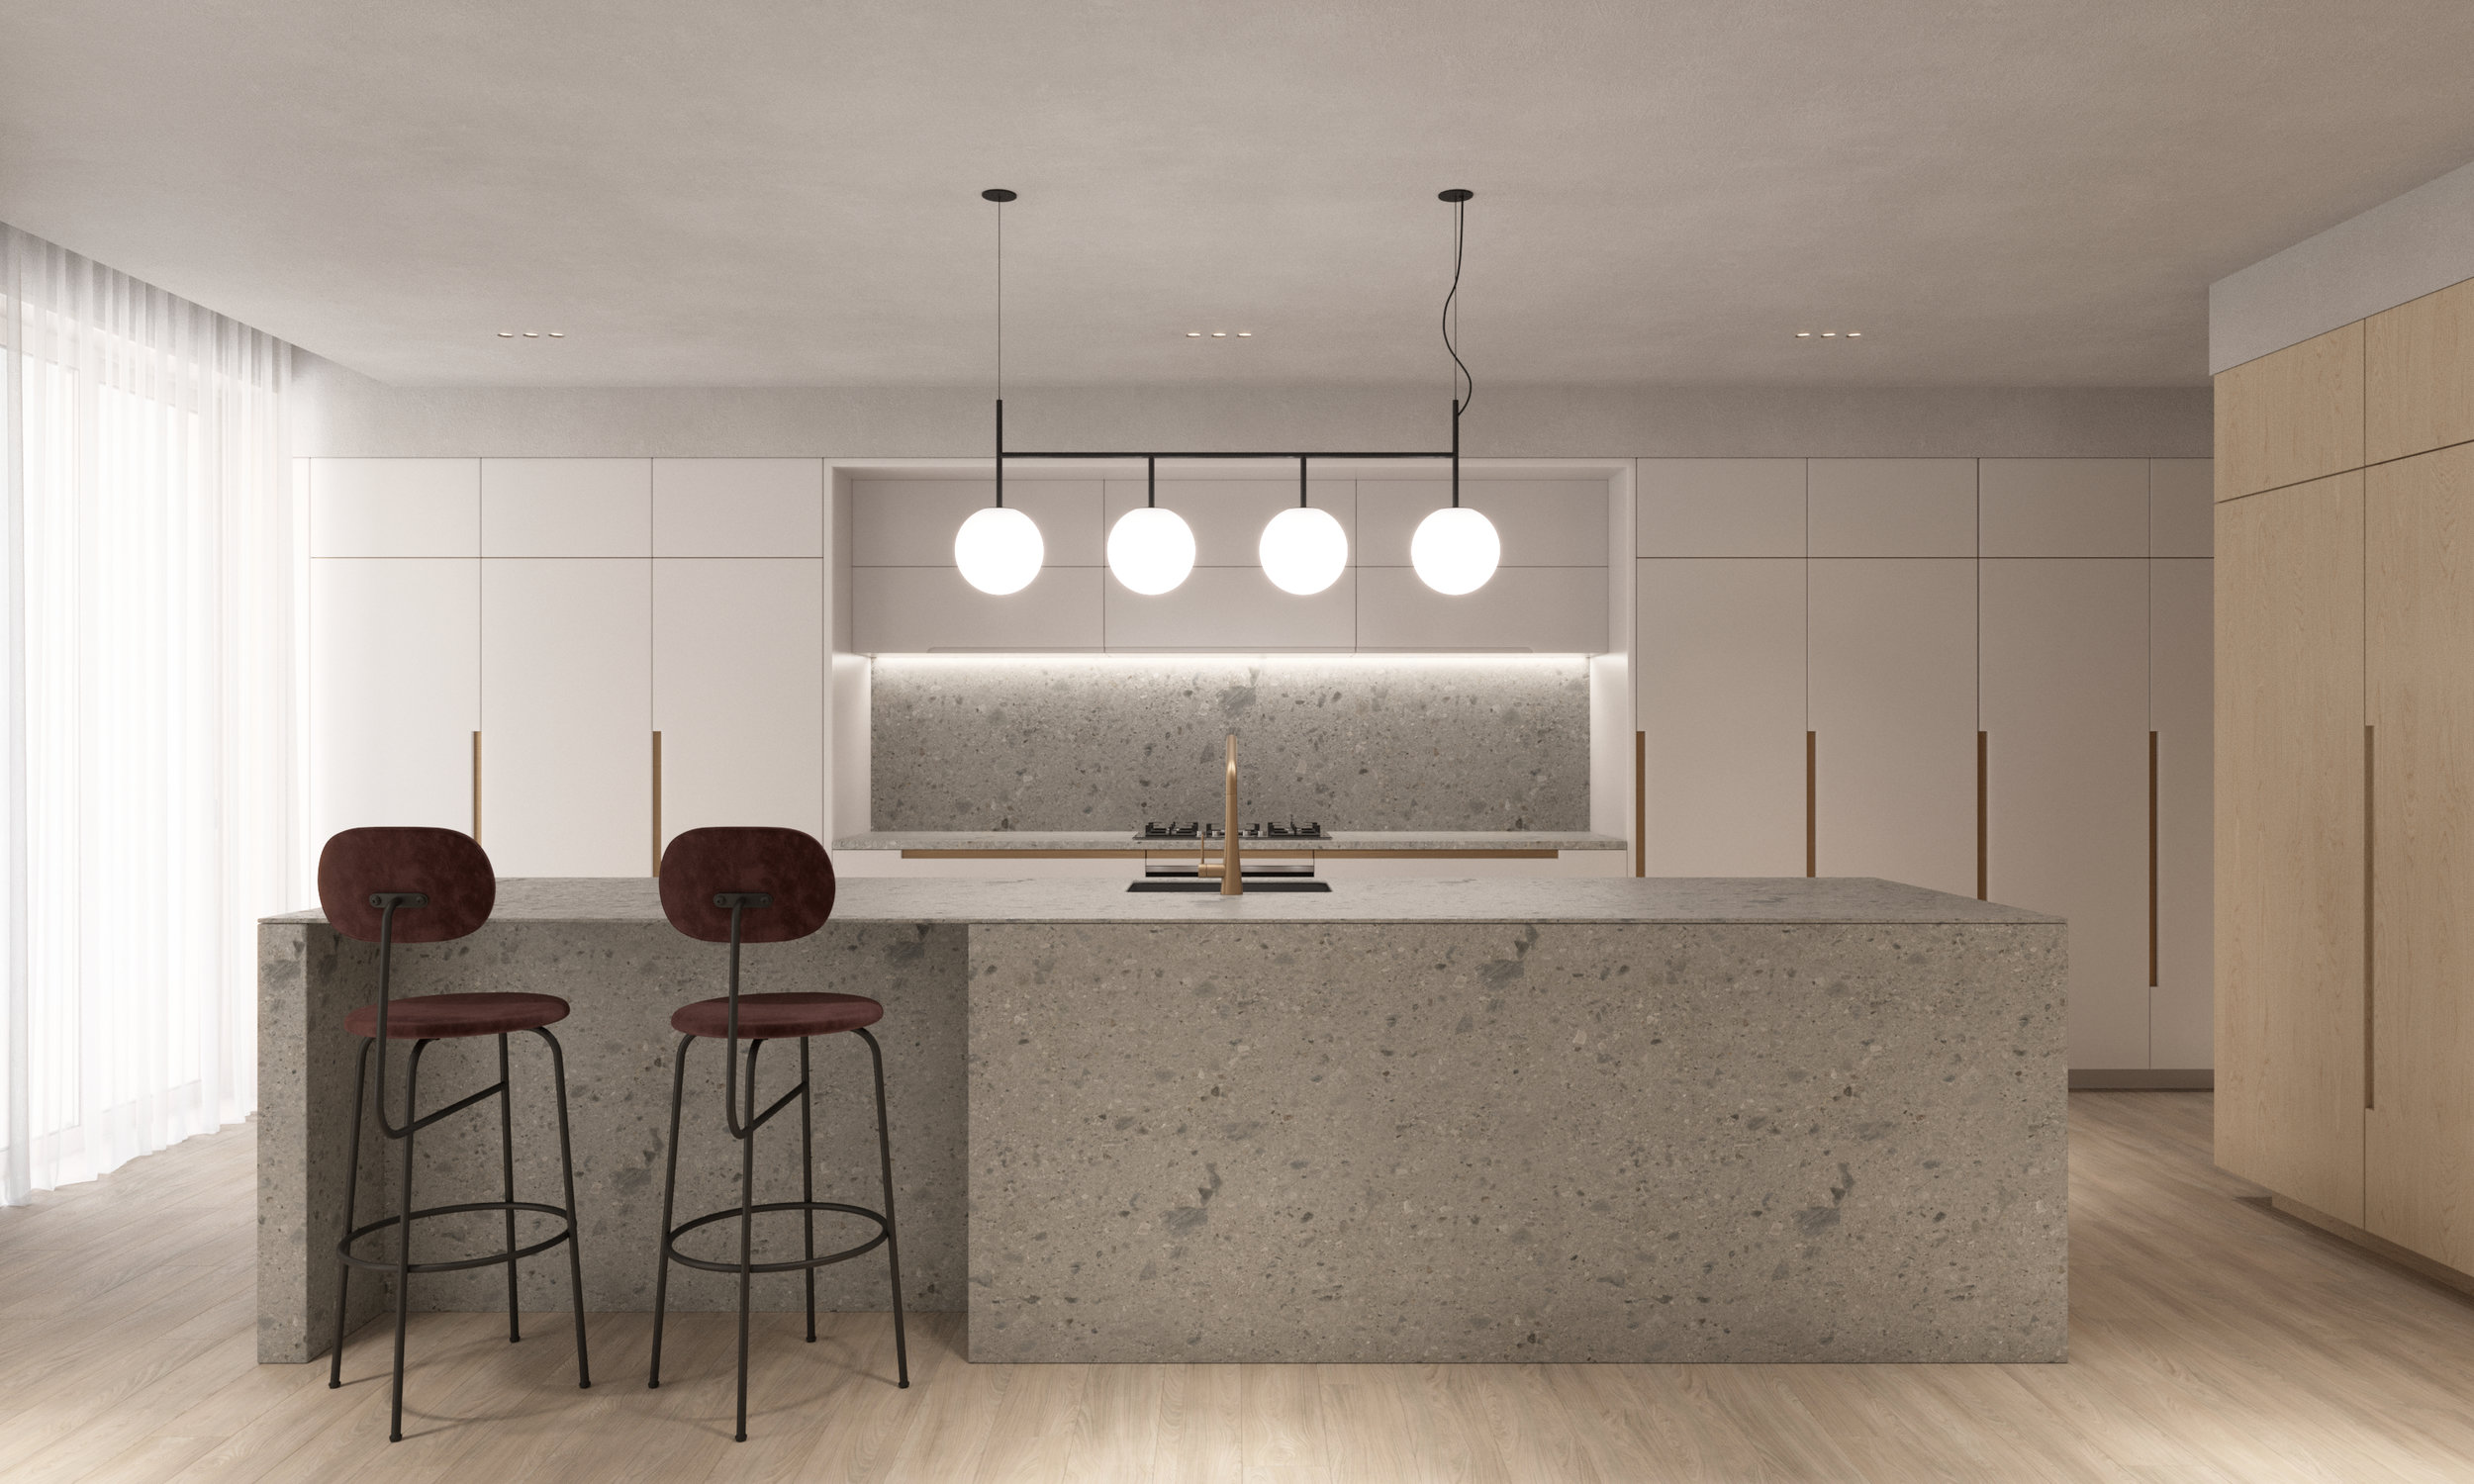 Unit4 Interior Design Residential Apartment Concept Visuals CGI Artist in London